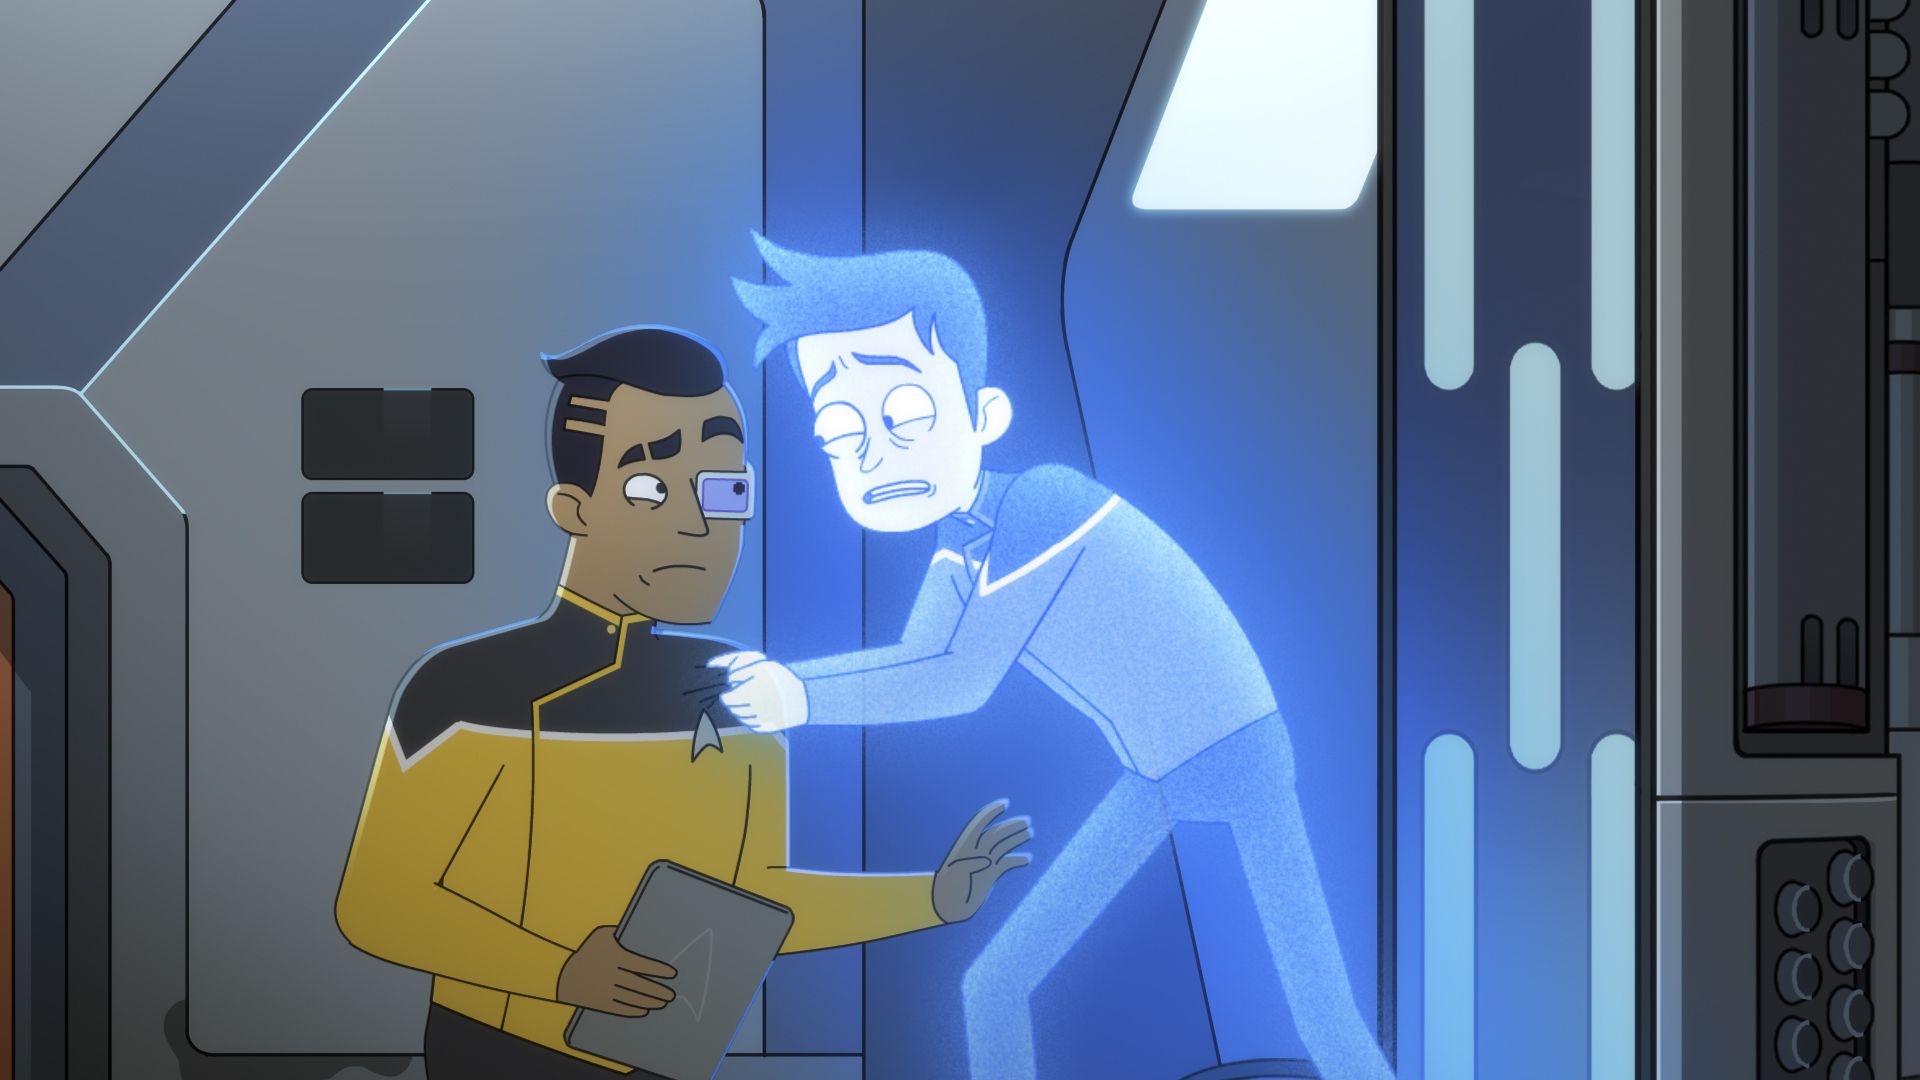 Star Trek: Lower Decks background